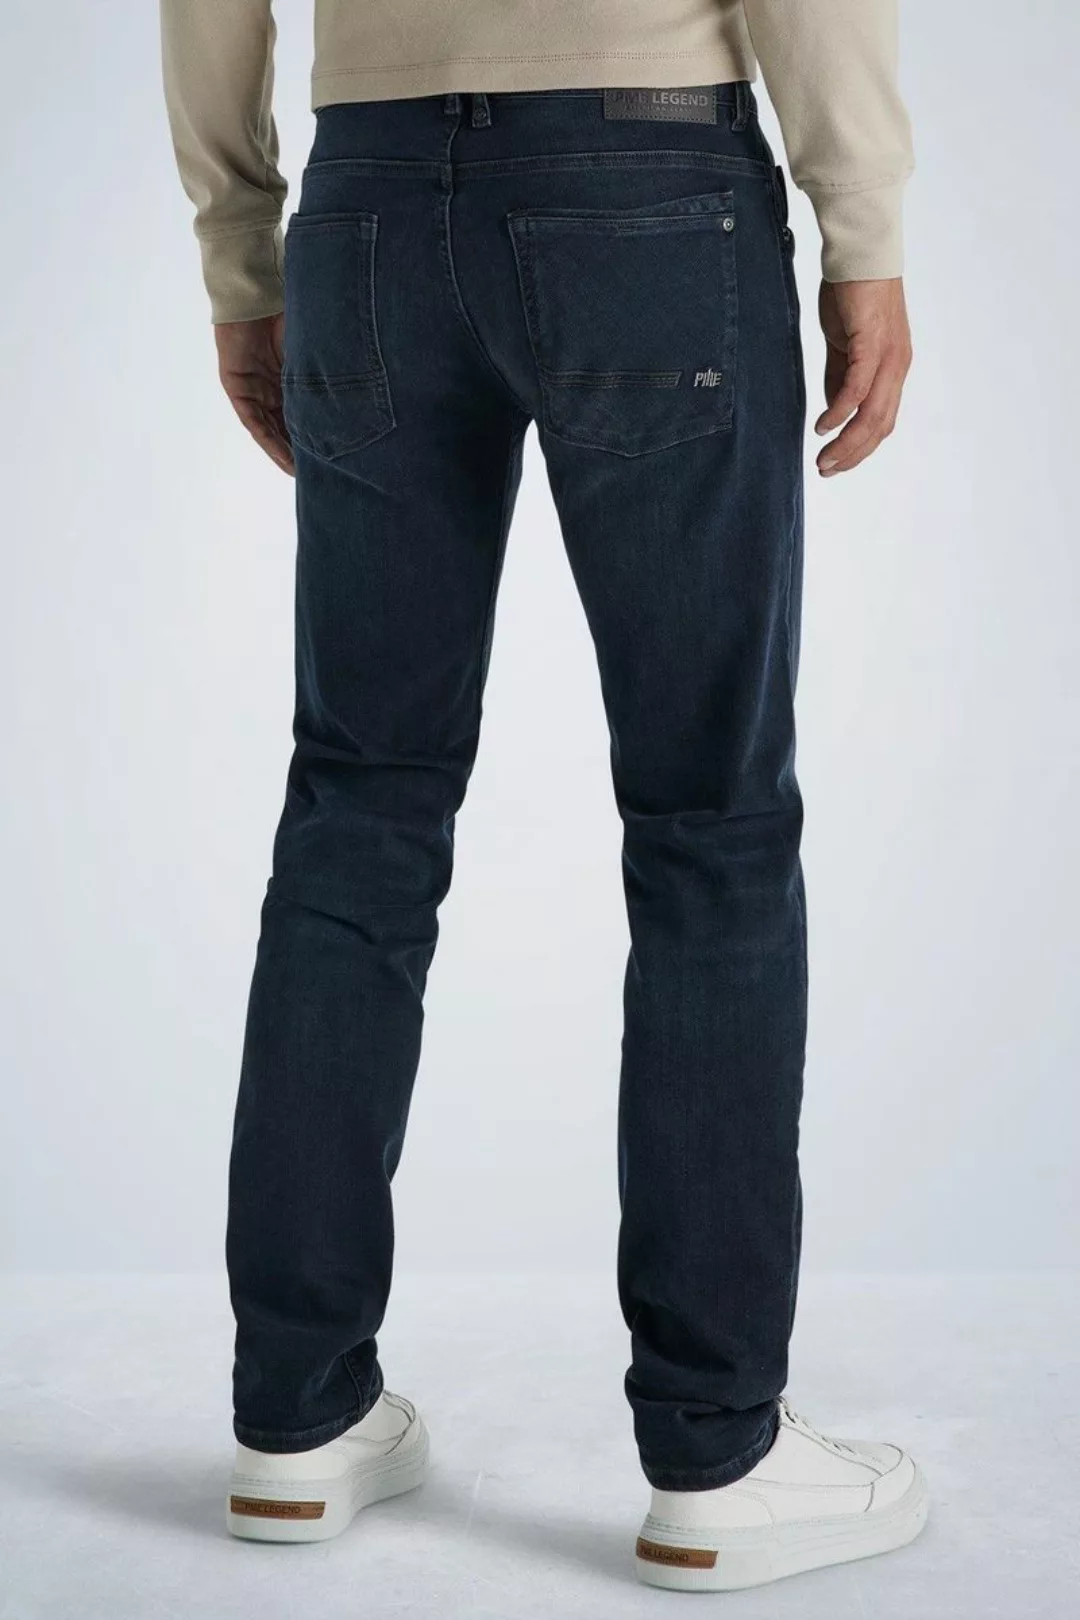 PME Legend Commander 3.0 Jeans Blau Schwarz - Größe W 32 - L 36 günstig online kaufen